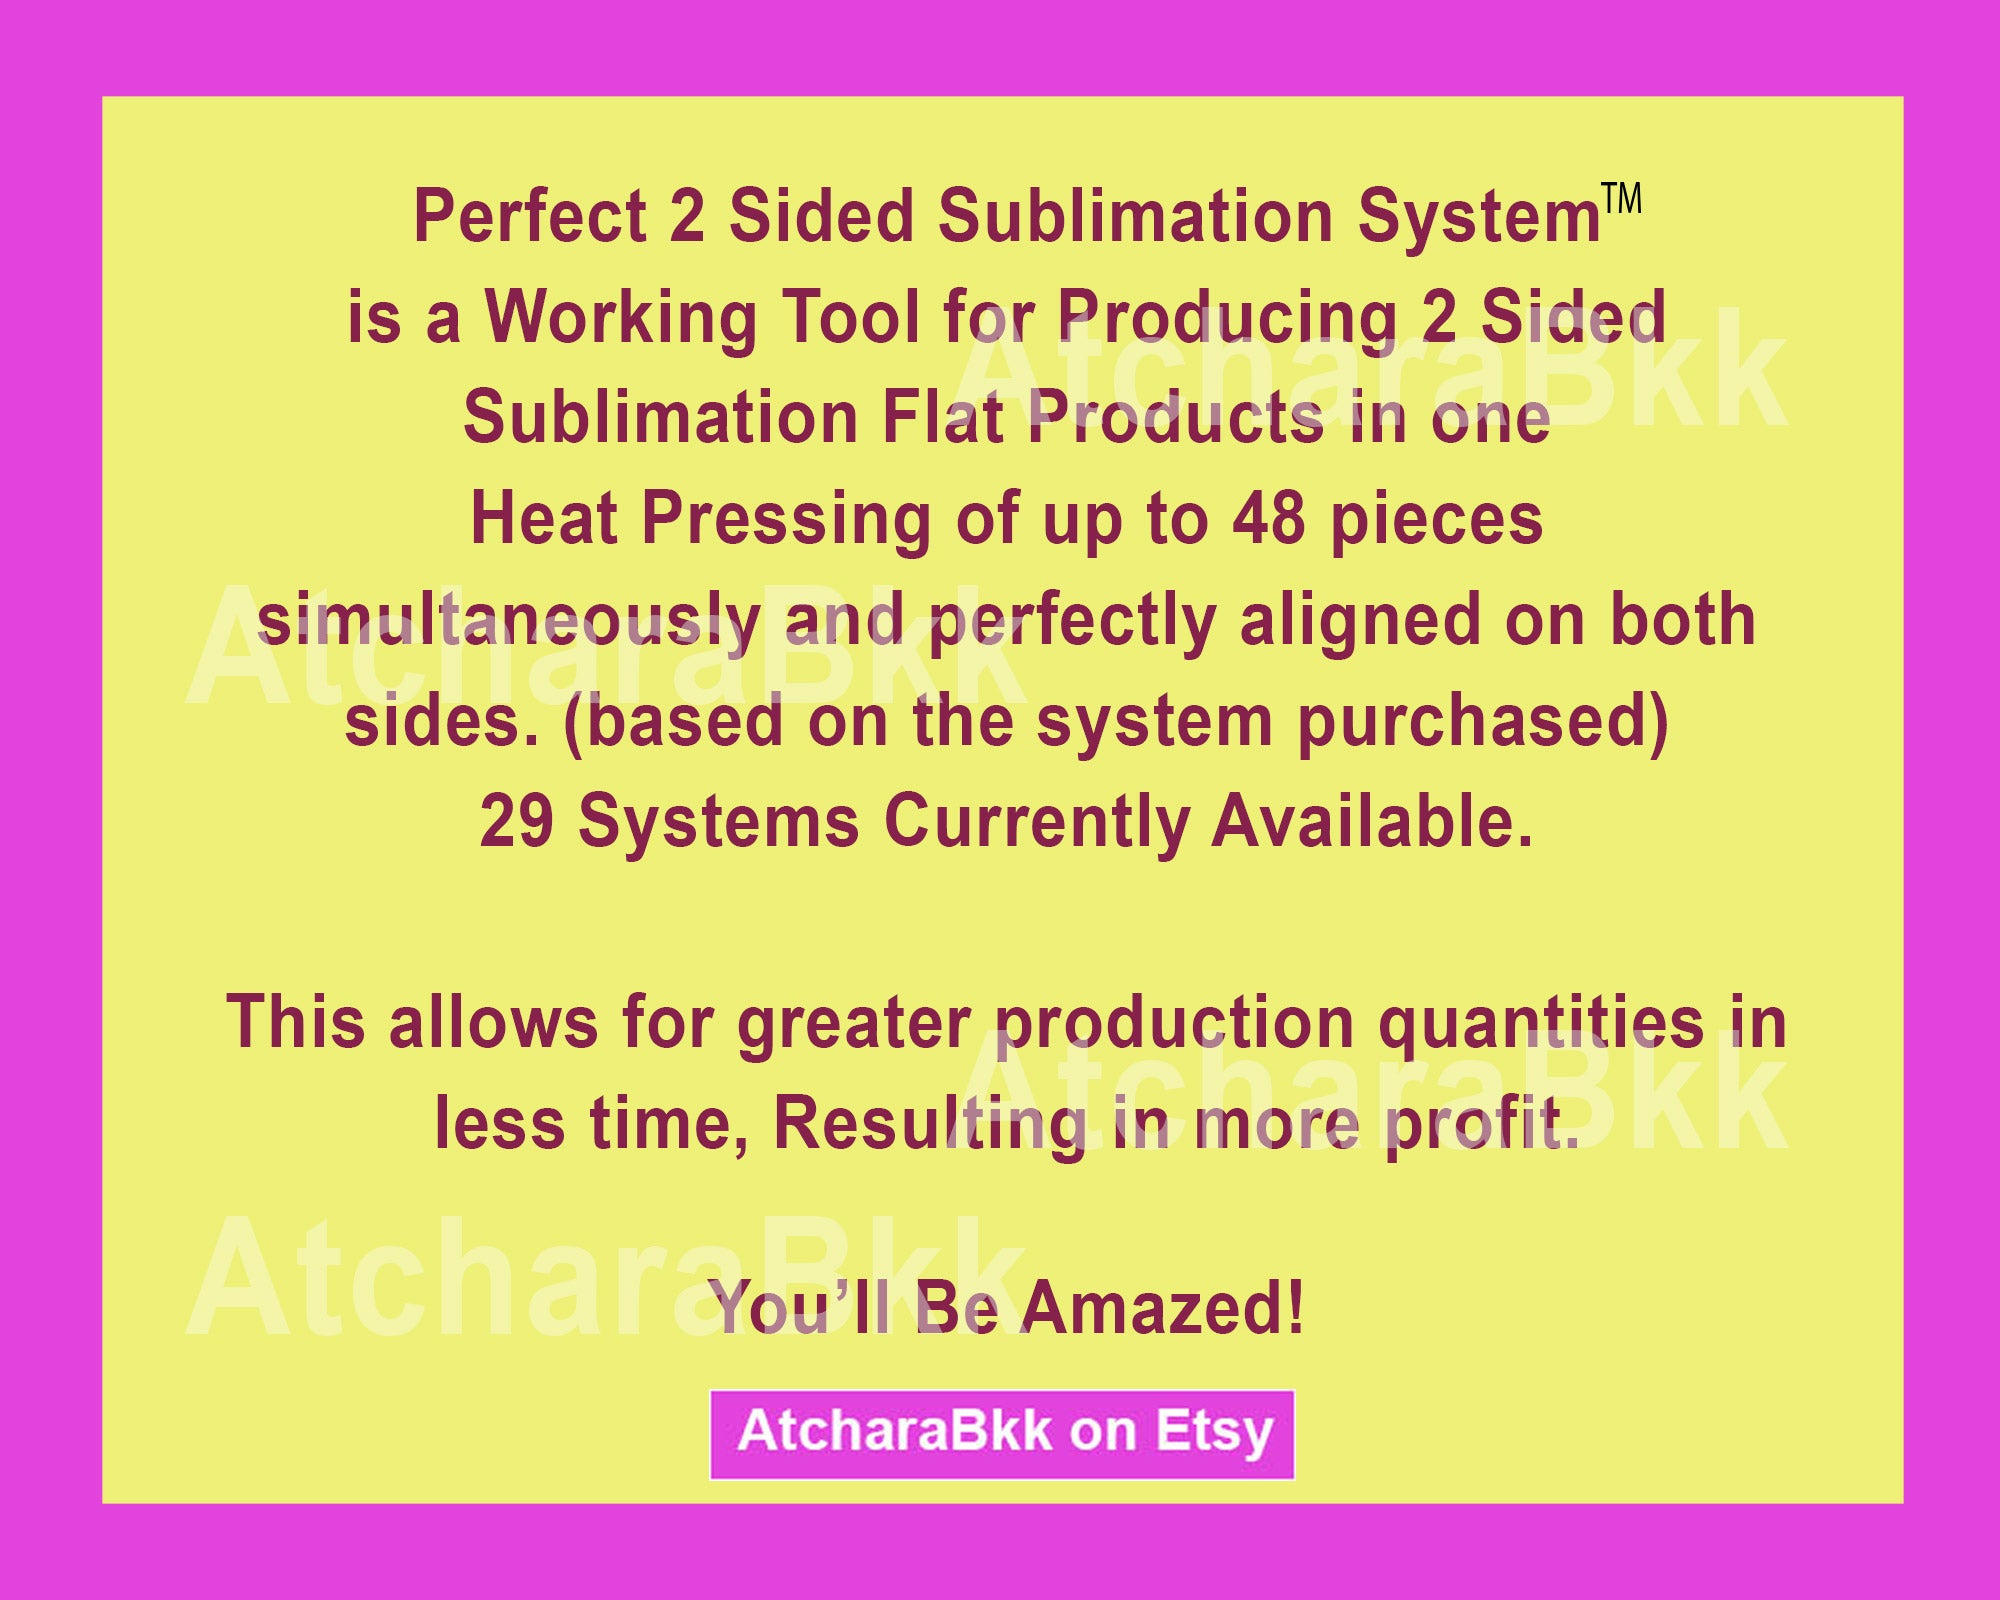 Arrowhead Keychain - Single sided or double sided - Sublimation